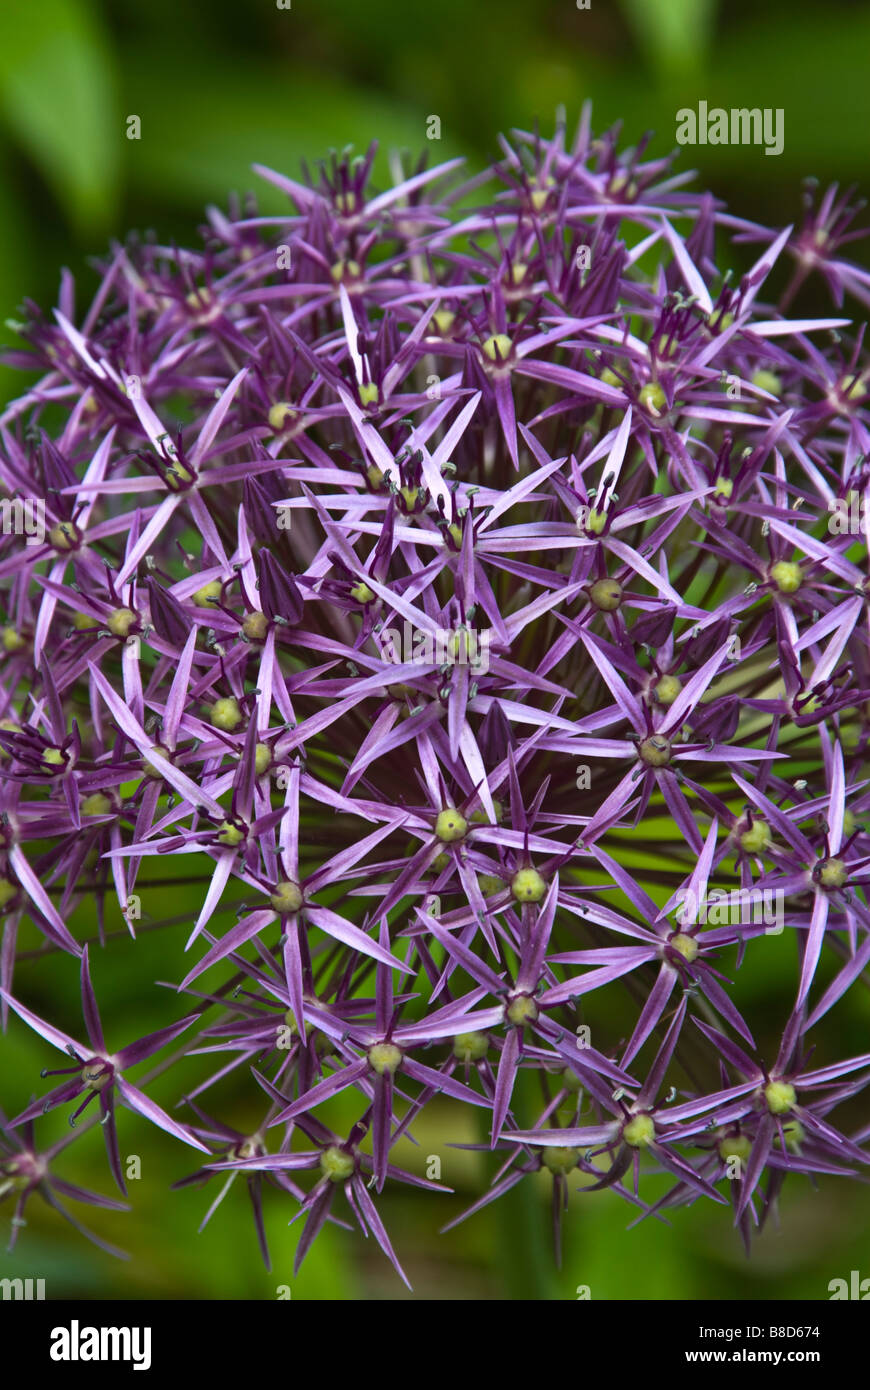 Closeup of flowers of Allium christophii synonym Allium albopilosum (Stars of Persia) in the June garden. Stock Photo